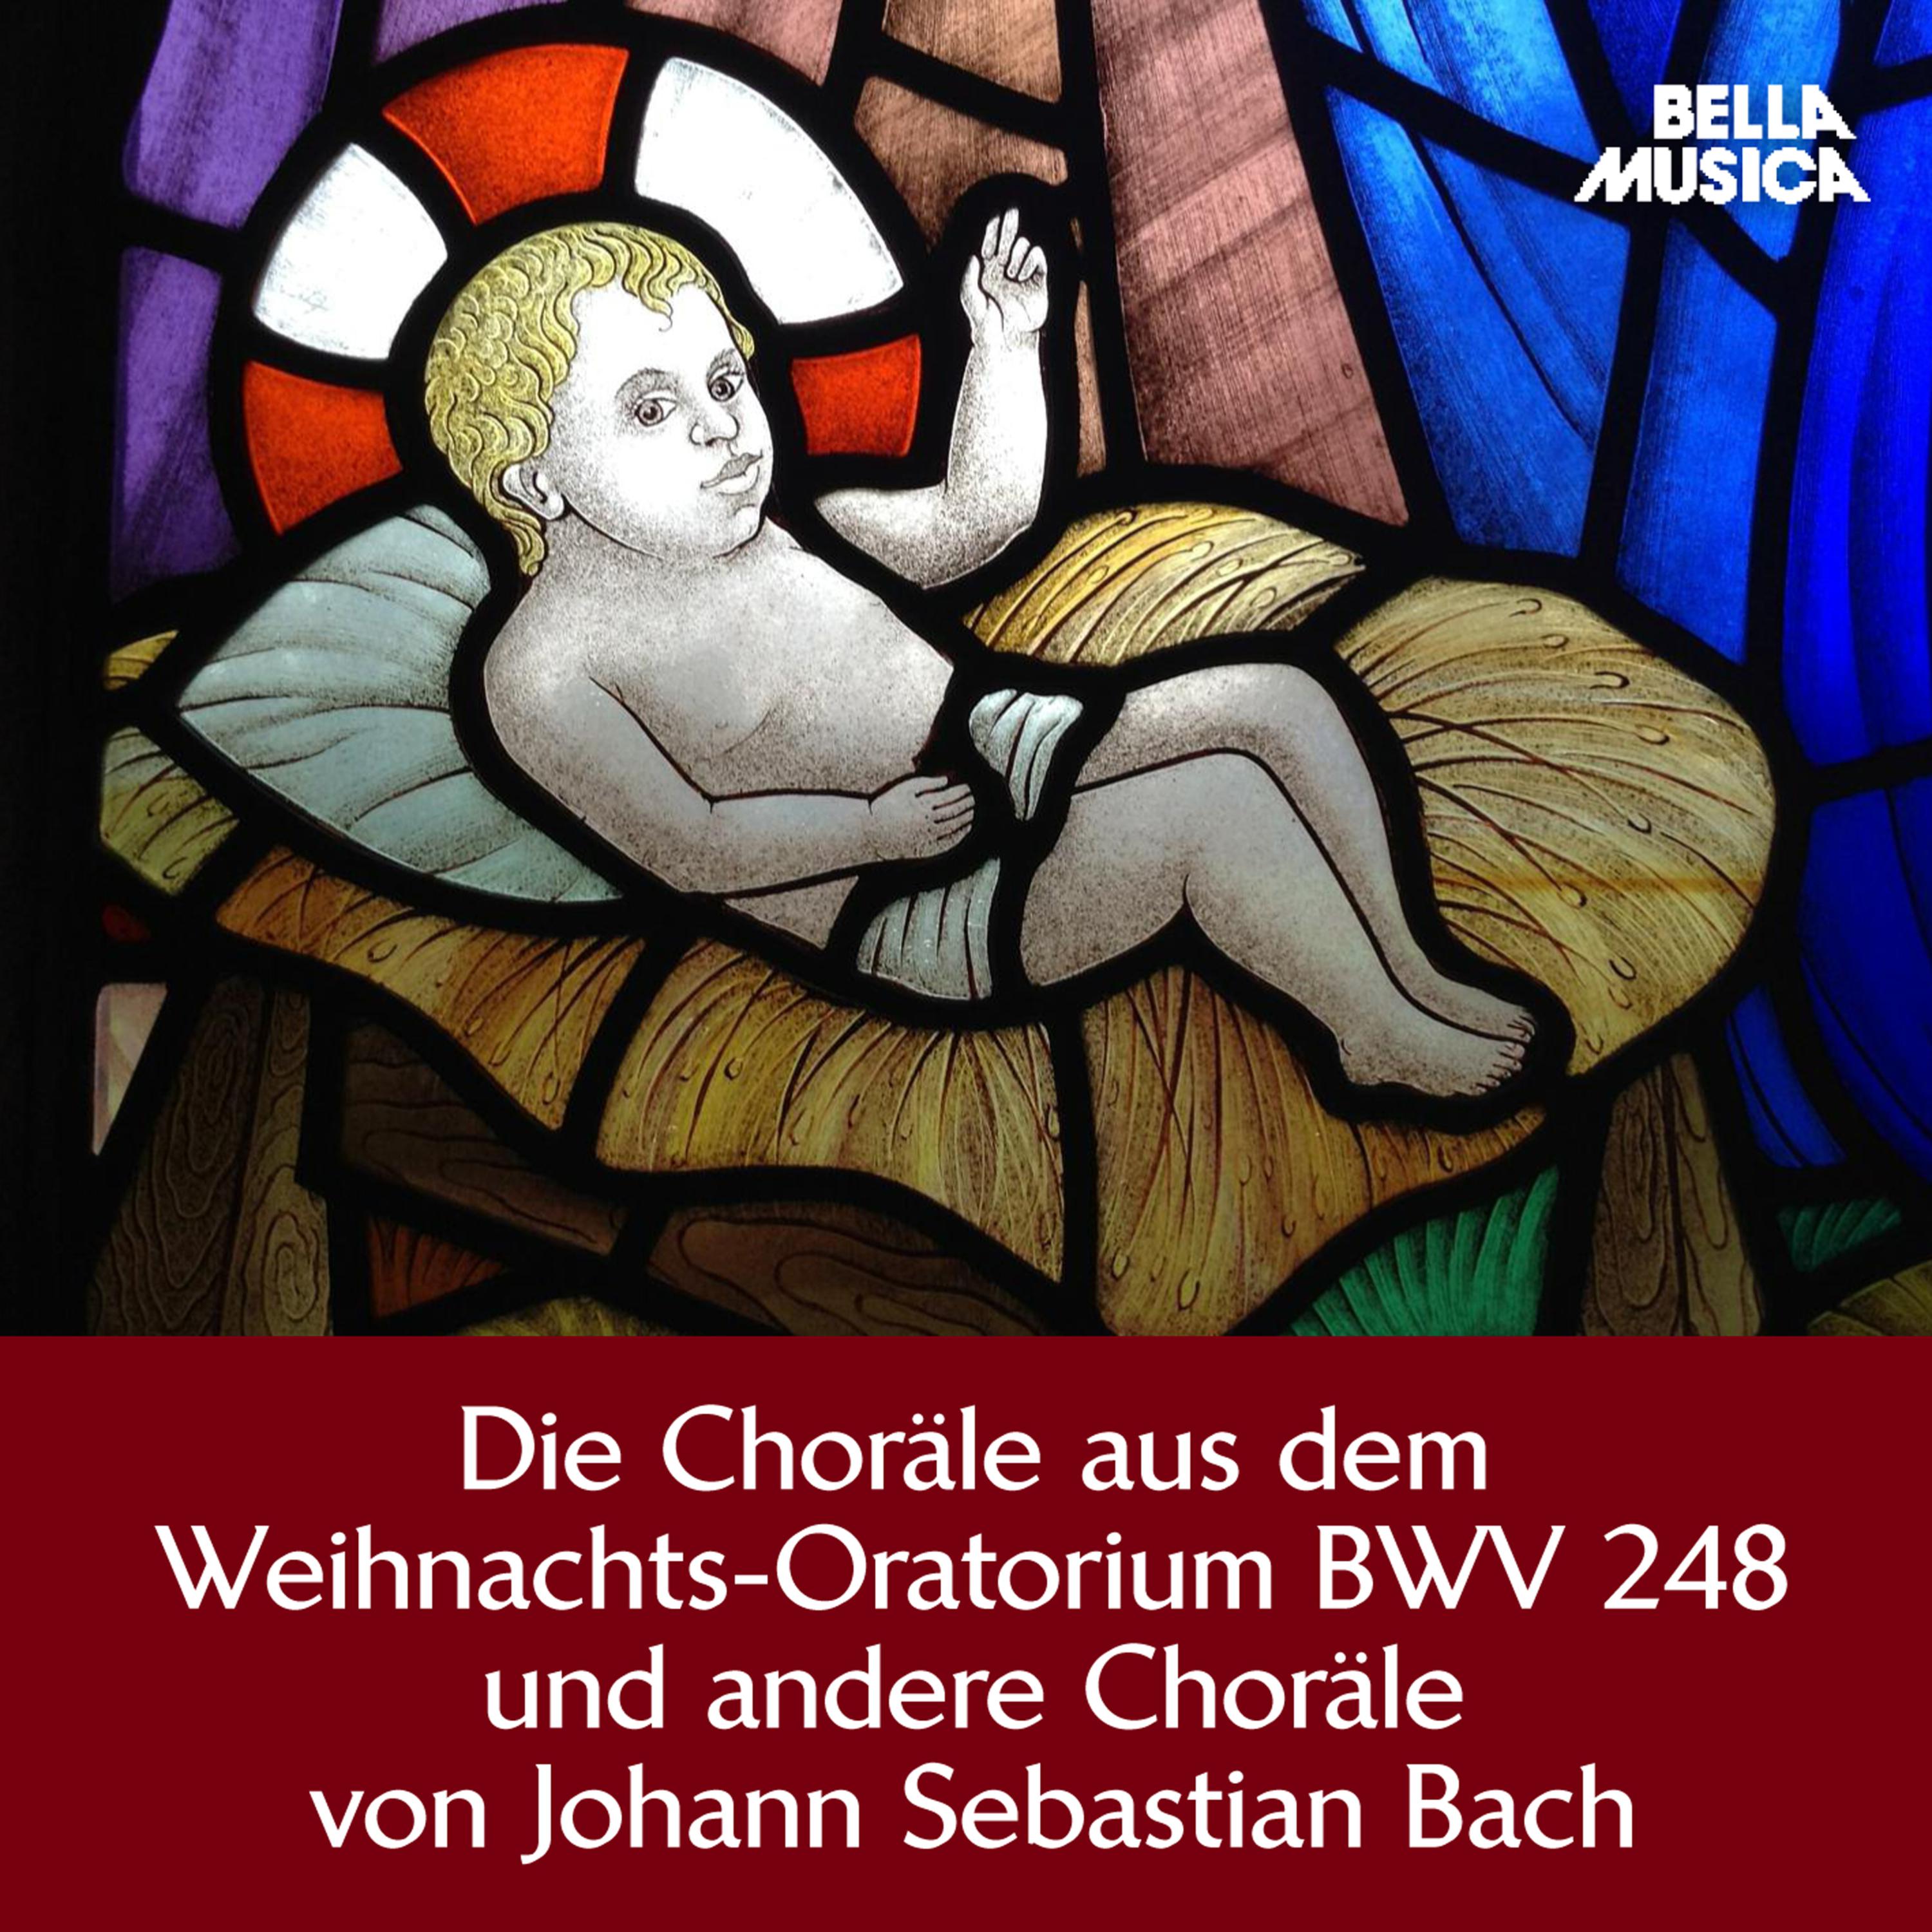 Weihnachts-Oratorium, BWV 248, Teil 6, Am Feste der Offenbarung Christi: Herr, wenn die stolzen Feinde schnauben